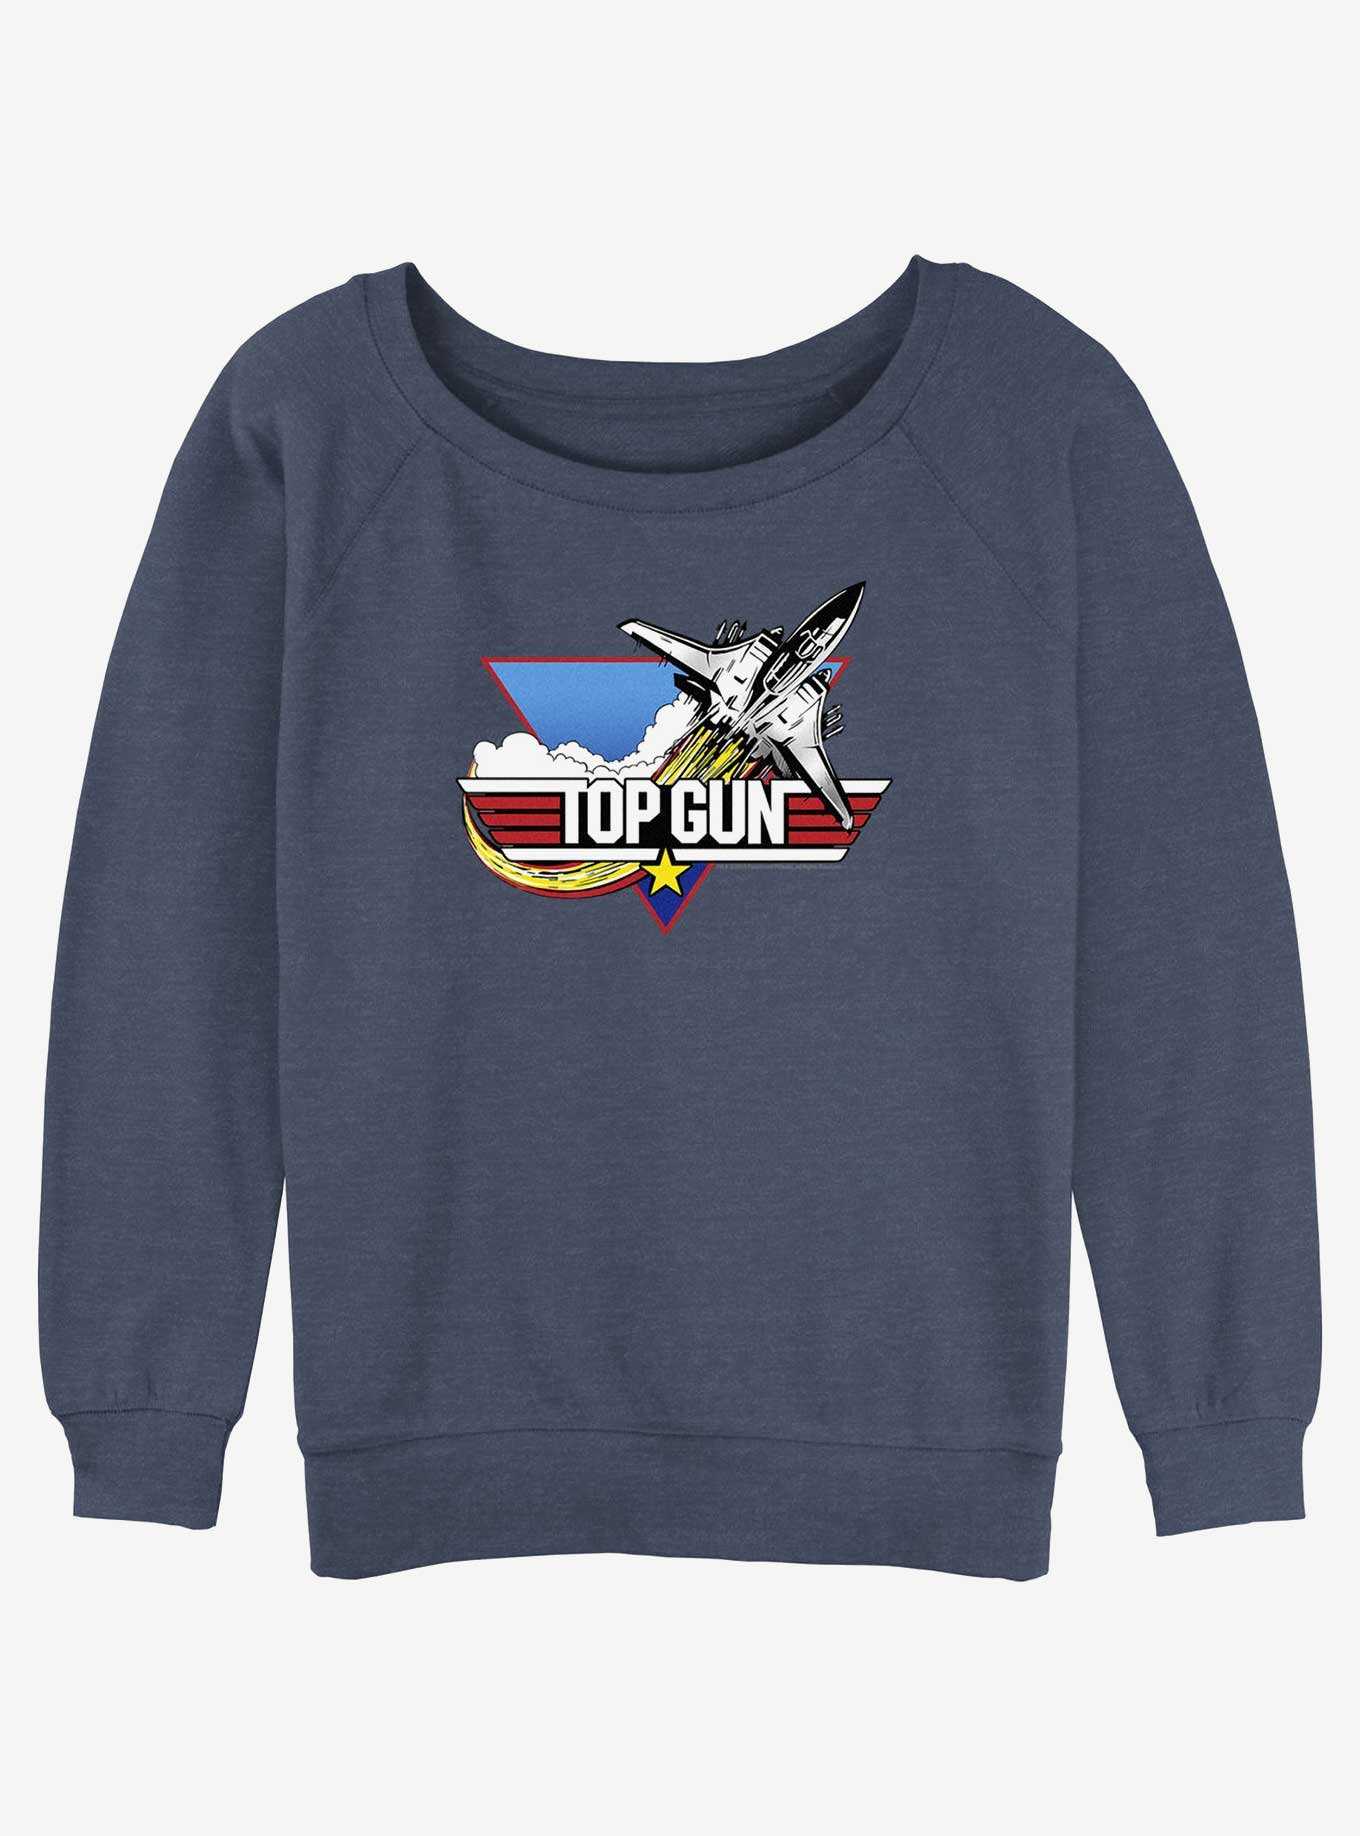 Top Gun Jet Logo Girls Slouchy Sweatshirt, , hi-res